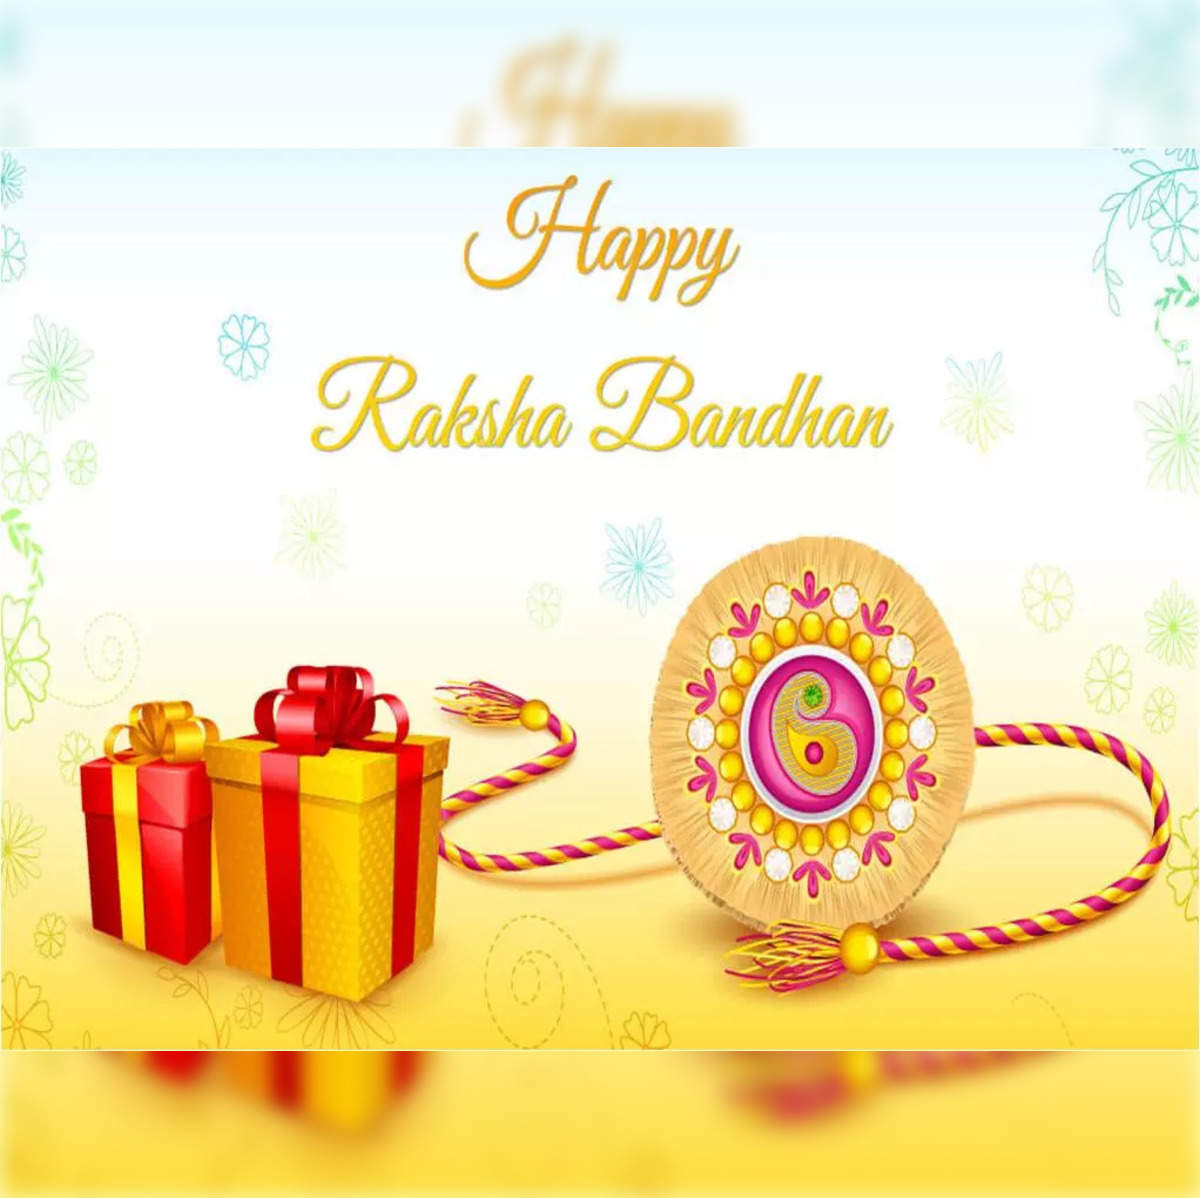 Modern Rakhi Gift ideas for Your Sister on Raksha Bandhan 2019